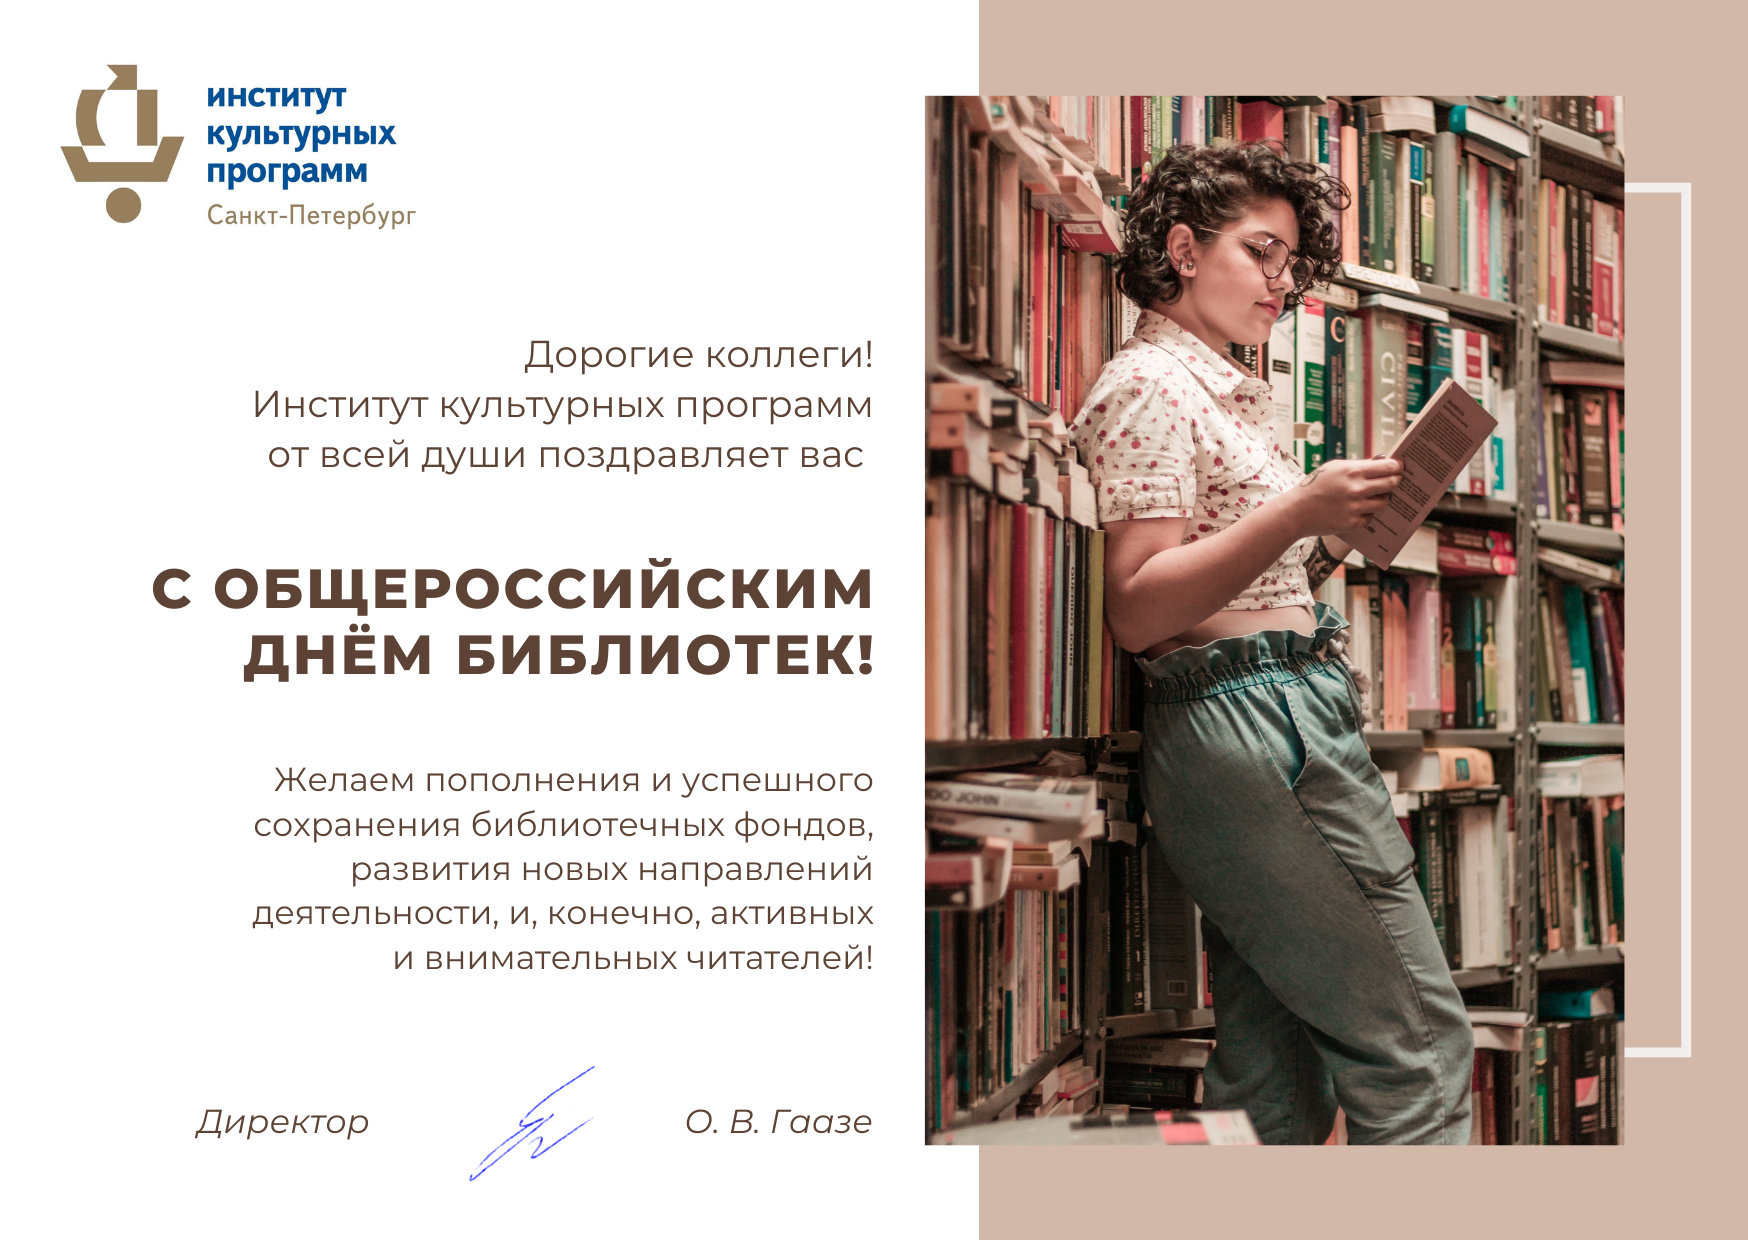 C Общероссийским днем библиотек